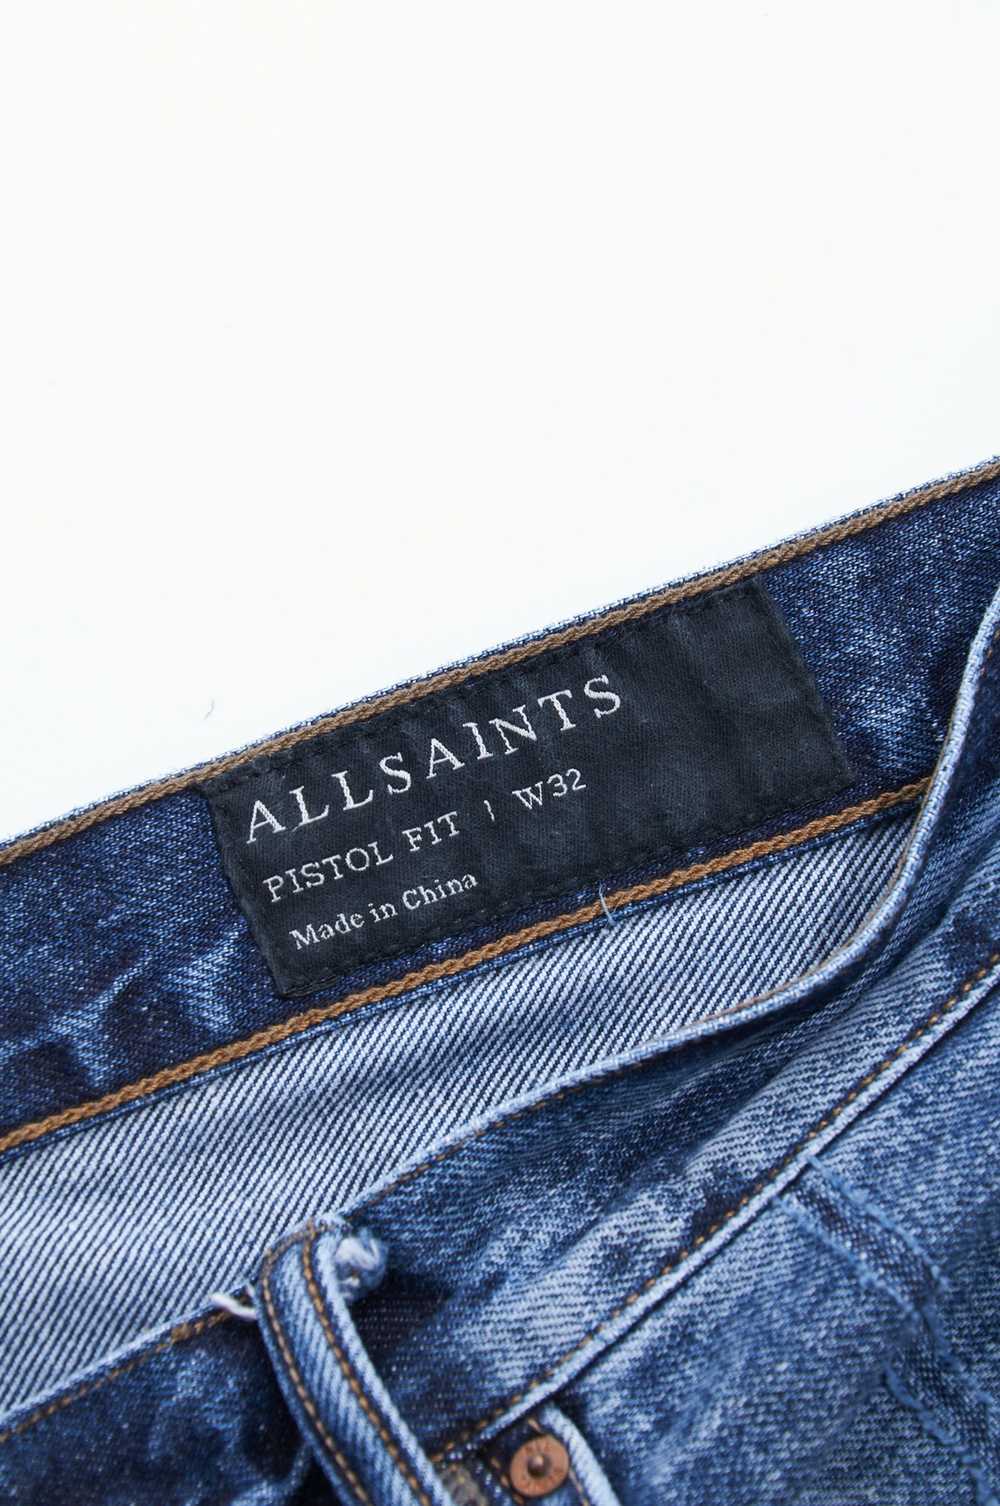 Allsaints ALLSAINTS Raw Jeans Navy Denim Cotton F… - image 5